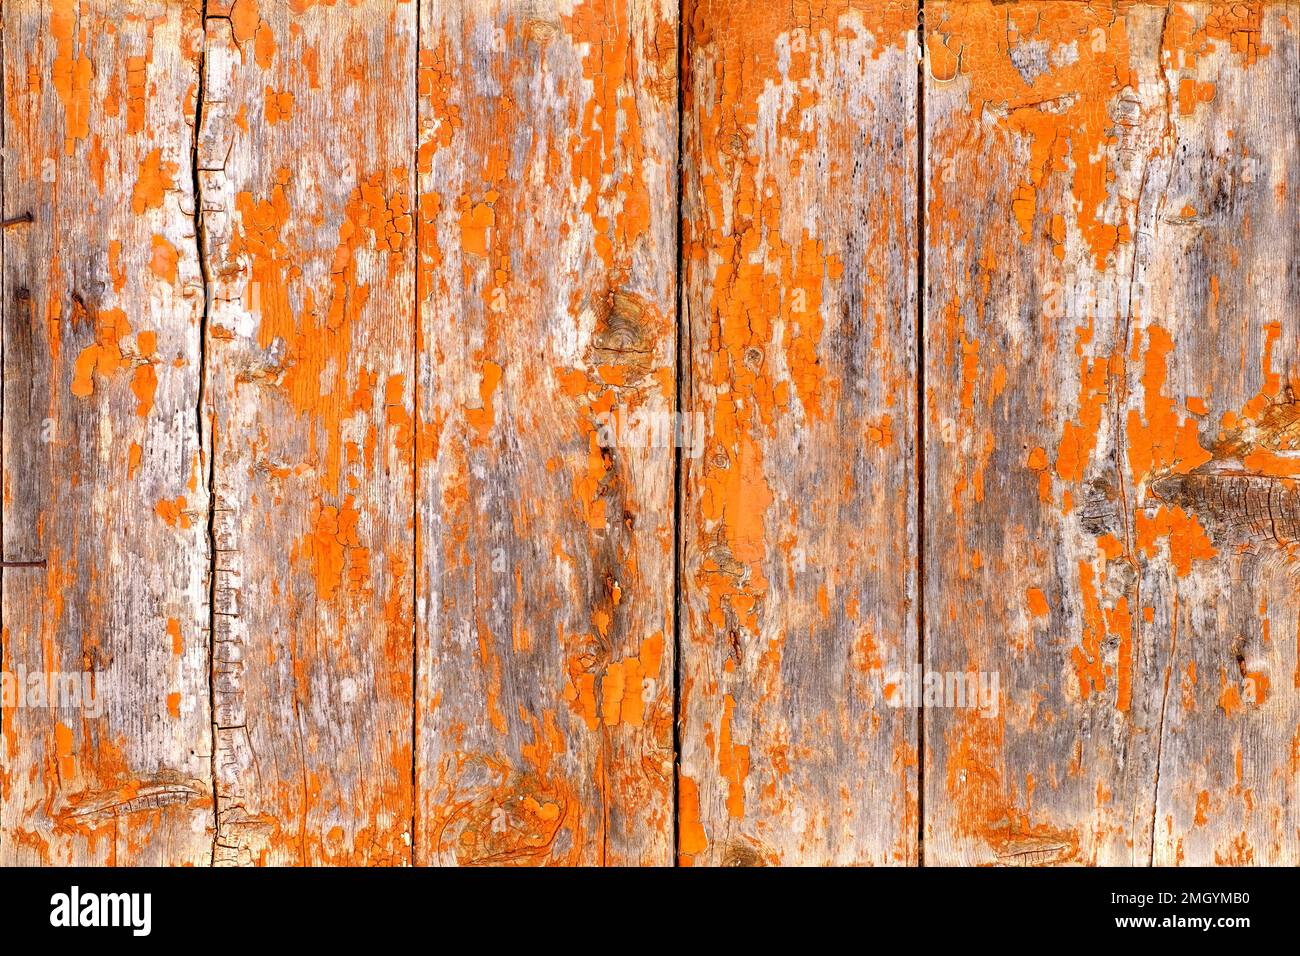 Ein einfaches Hintergrund- oder Tischbild. Das Foto zeigt eine abgenutzte rustikale Holztafel, orange gestrichen. Die Witterung hat die Farbe aufgeweicht Stockfoto